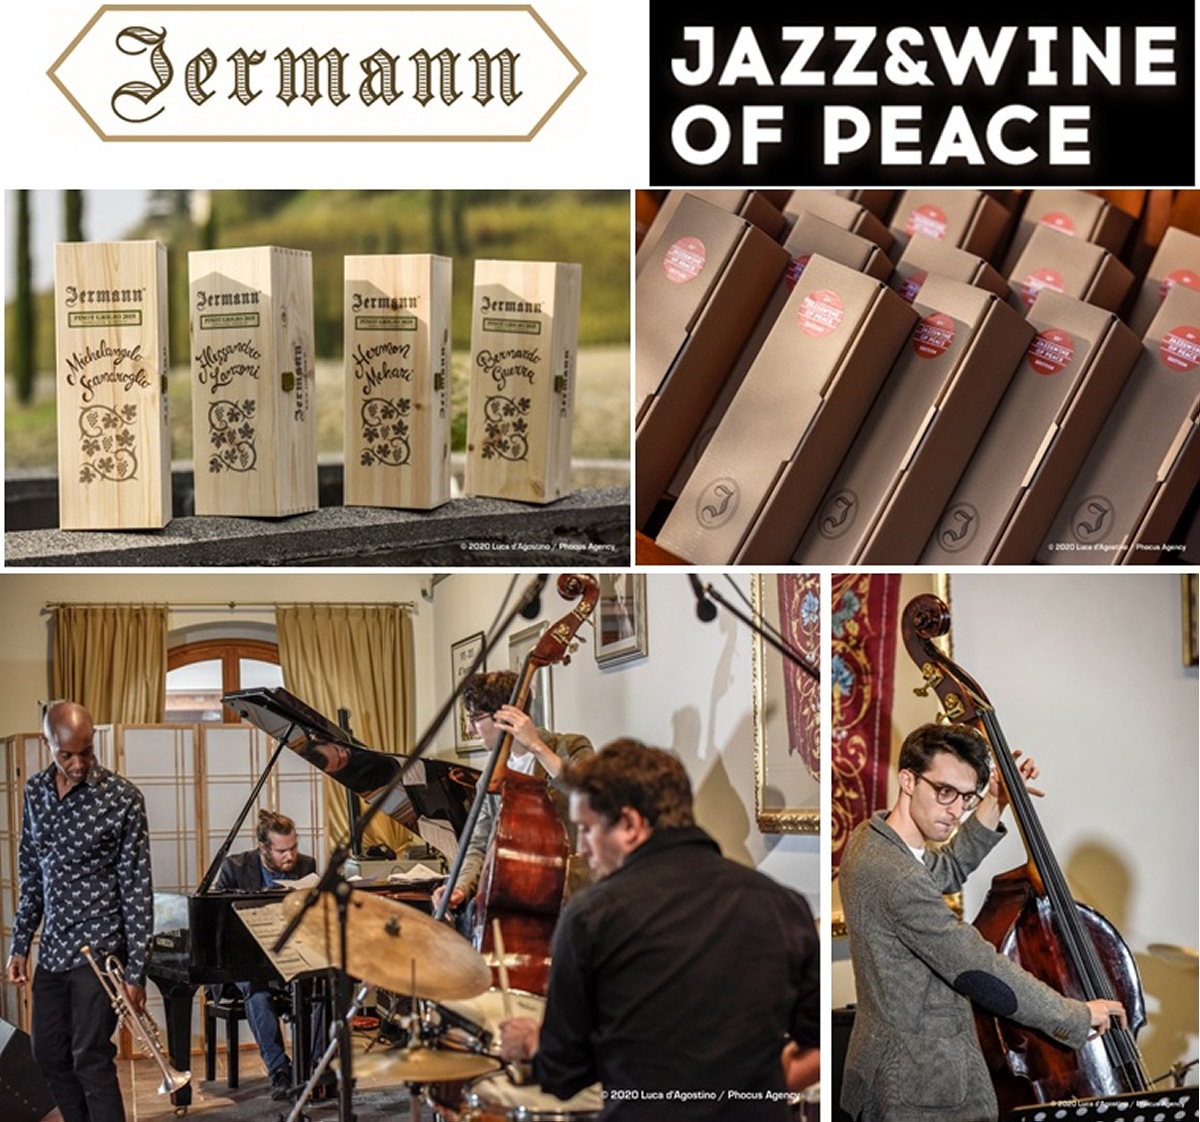  @Jermann Jazz & Wine of Peace with Michelangelo Scandoglio Group